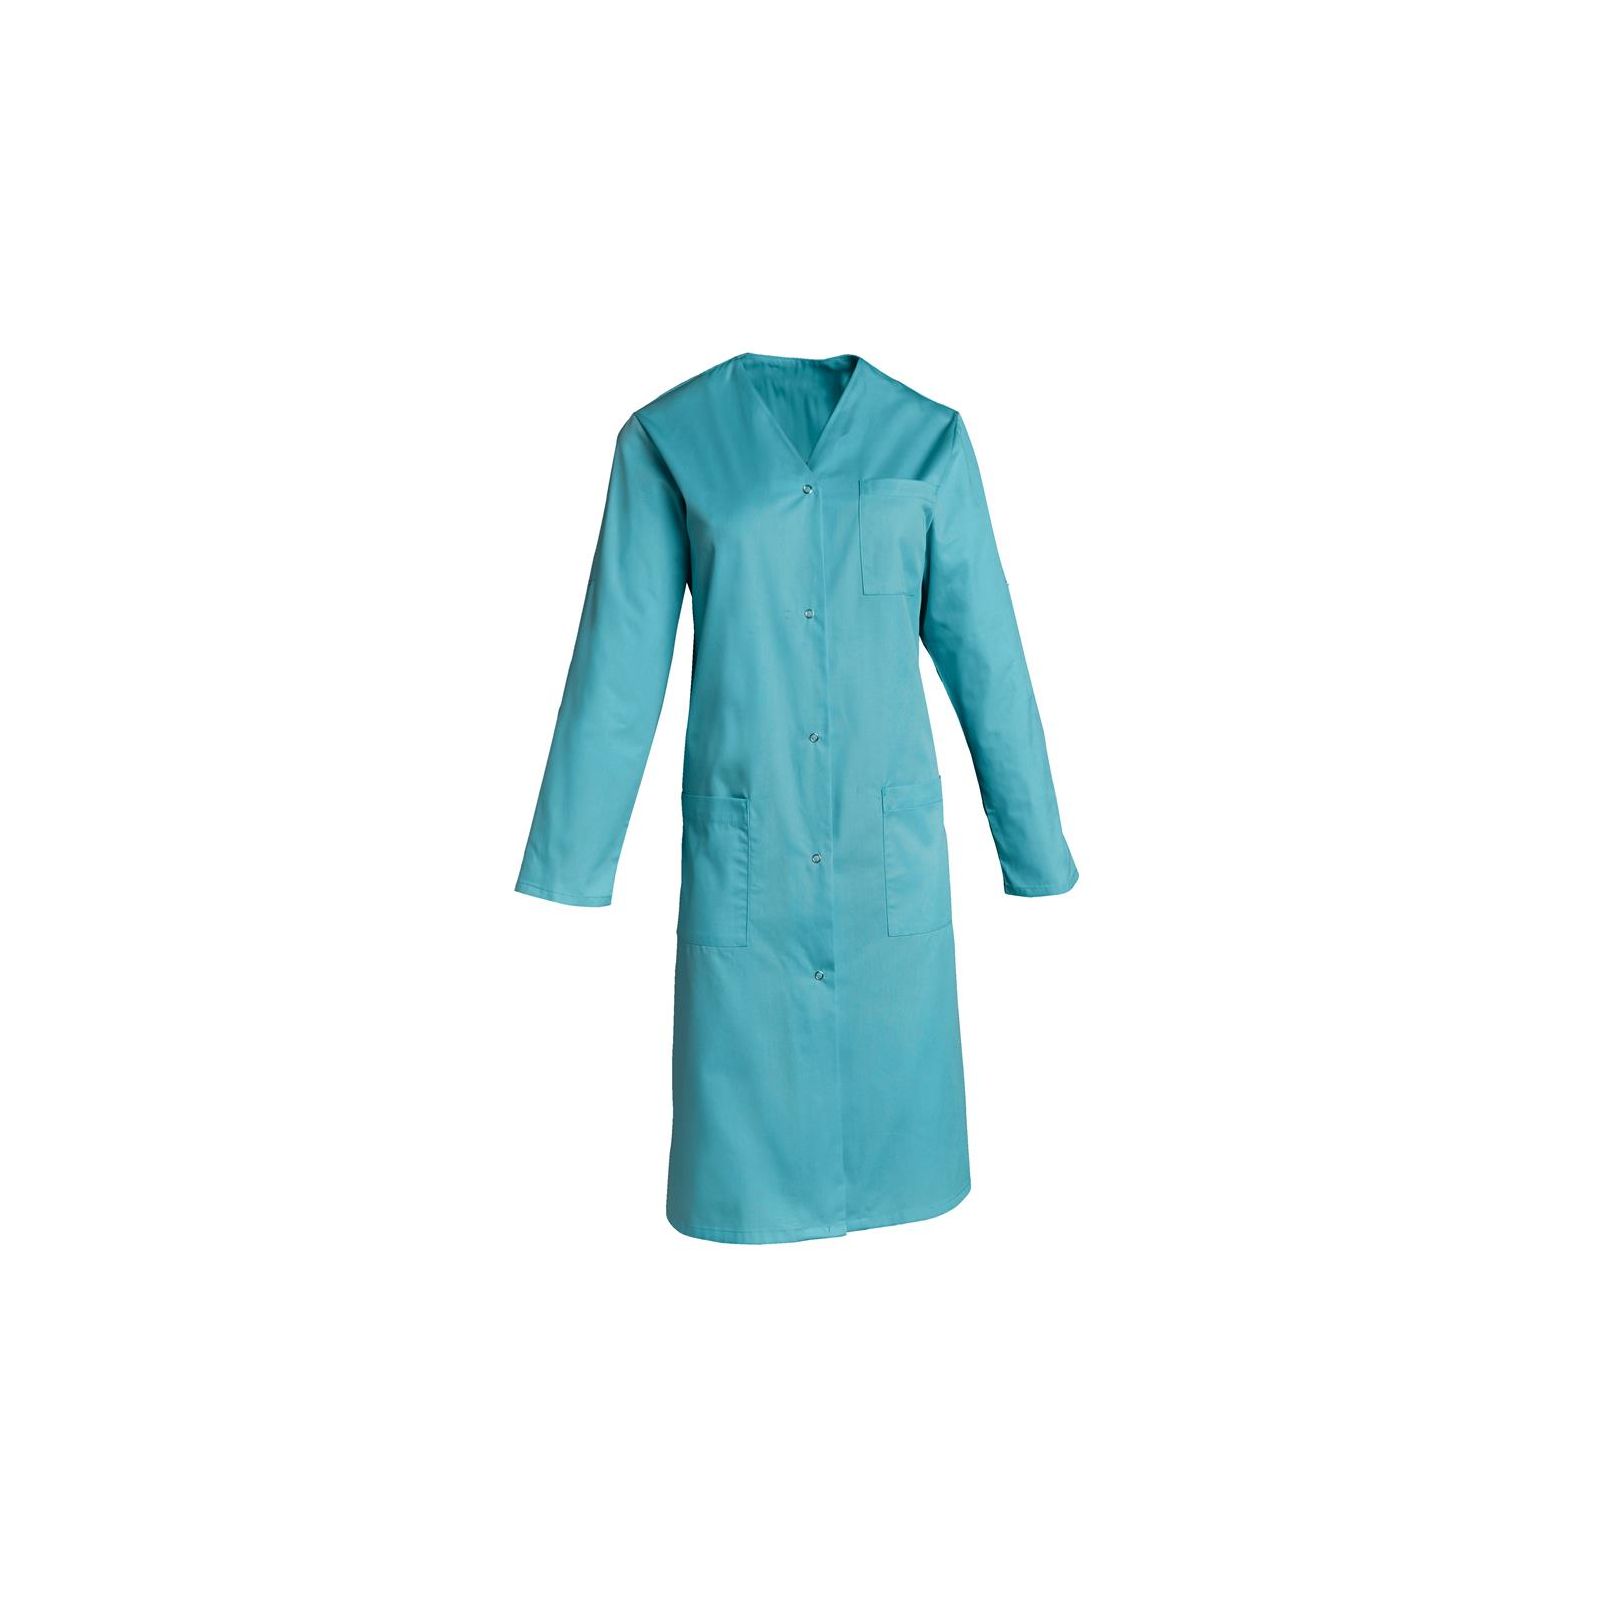 Blouse médicale Femme couleur manches longues Lisa, SNV (LISAMR00) couleur bleu turquoise